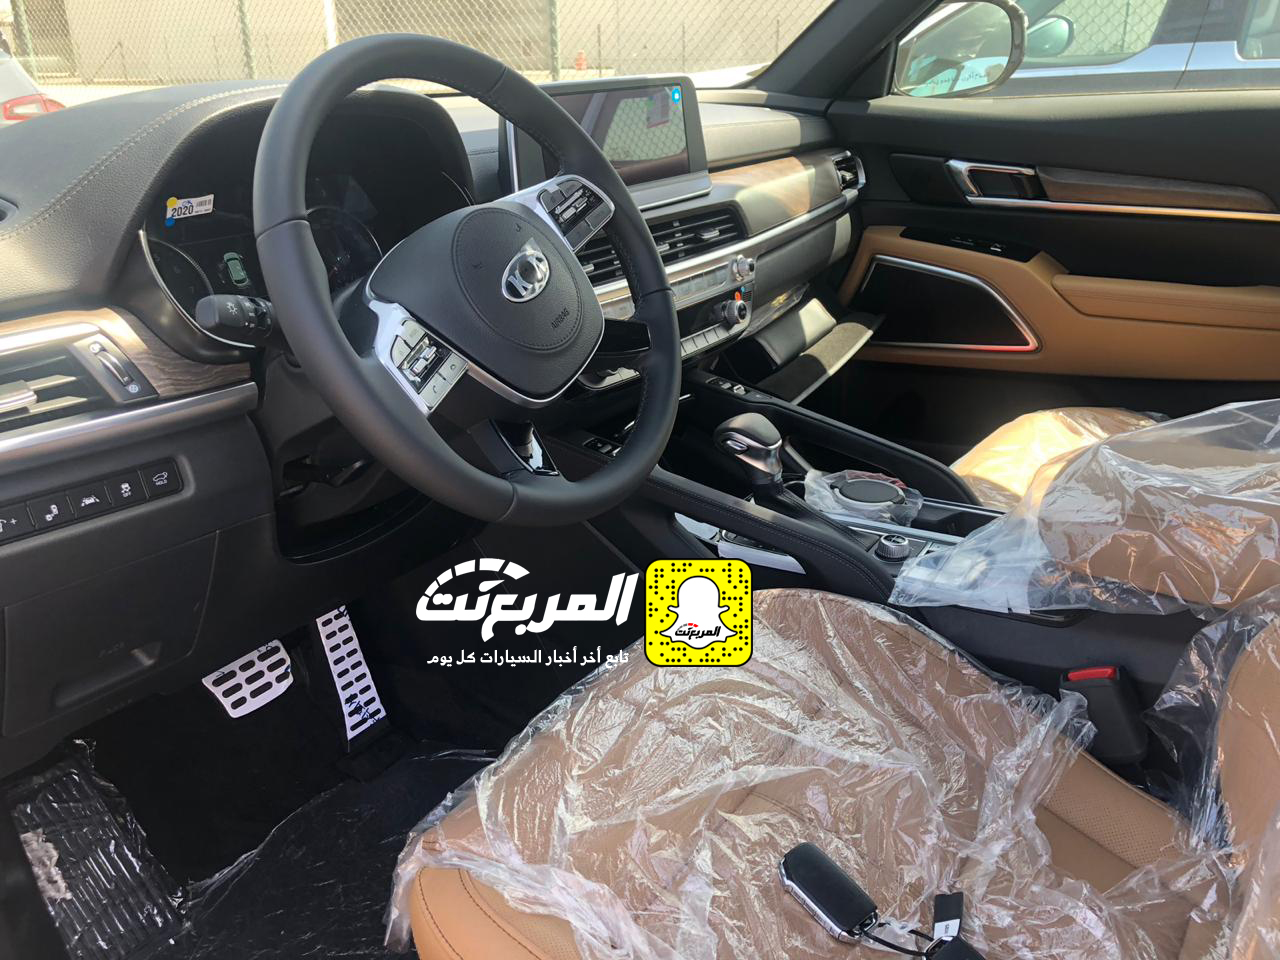 "بالصور" وصول كيا تيلورايد 2020 الجديدة الى السعودية اكبر SUV من كيا + موعد البيع الرسمي 21